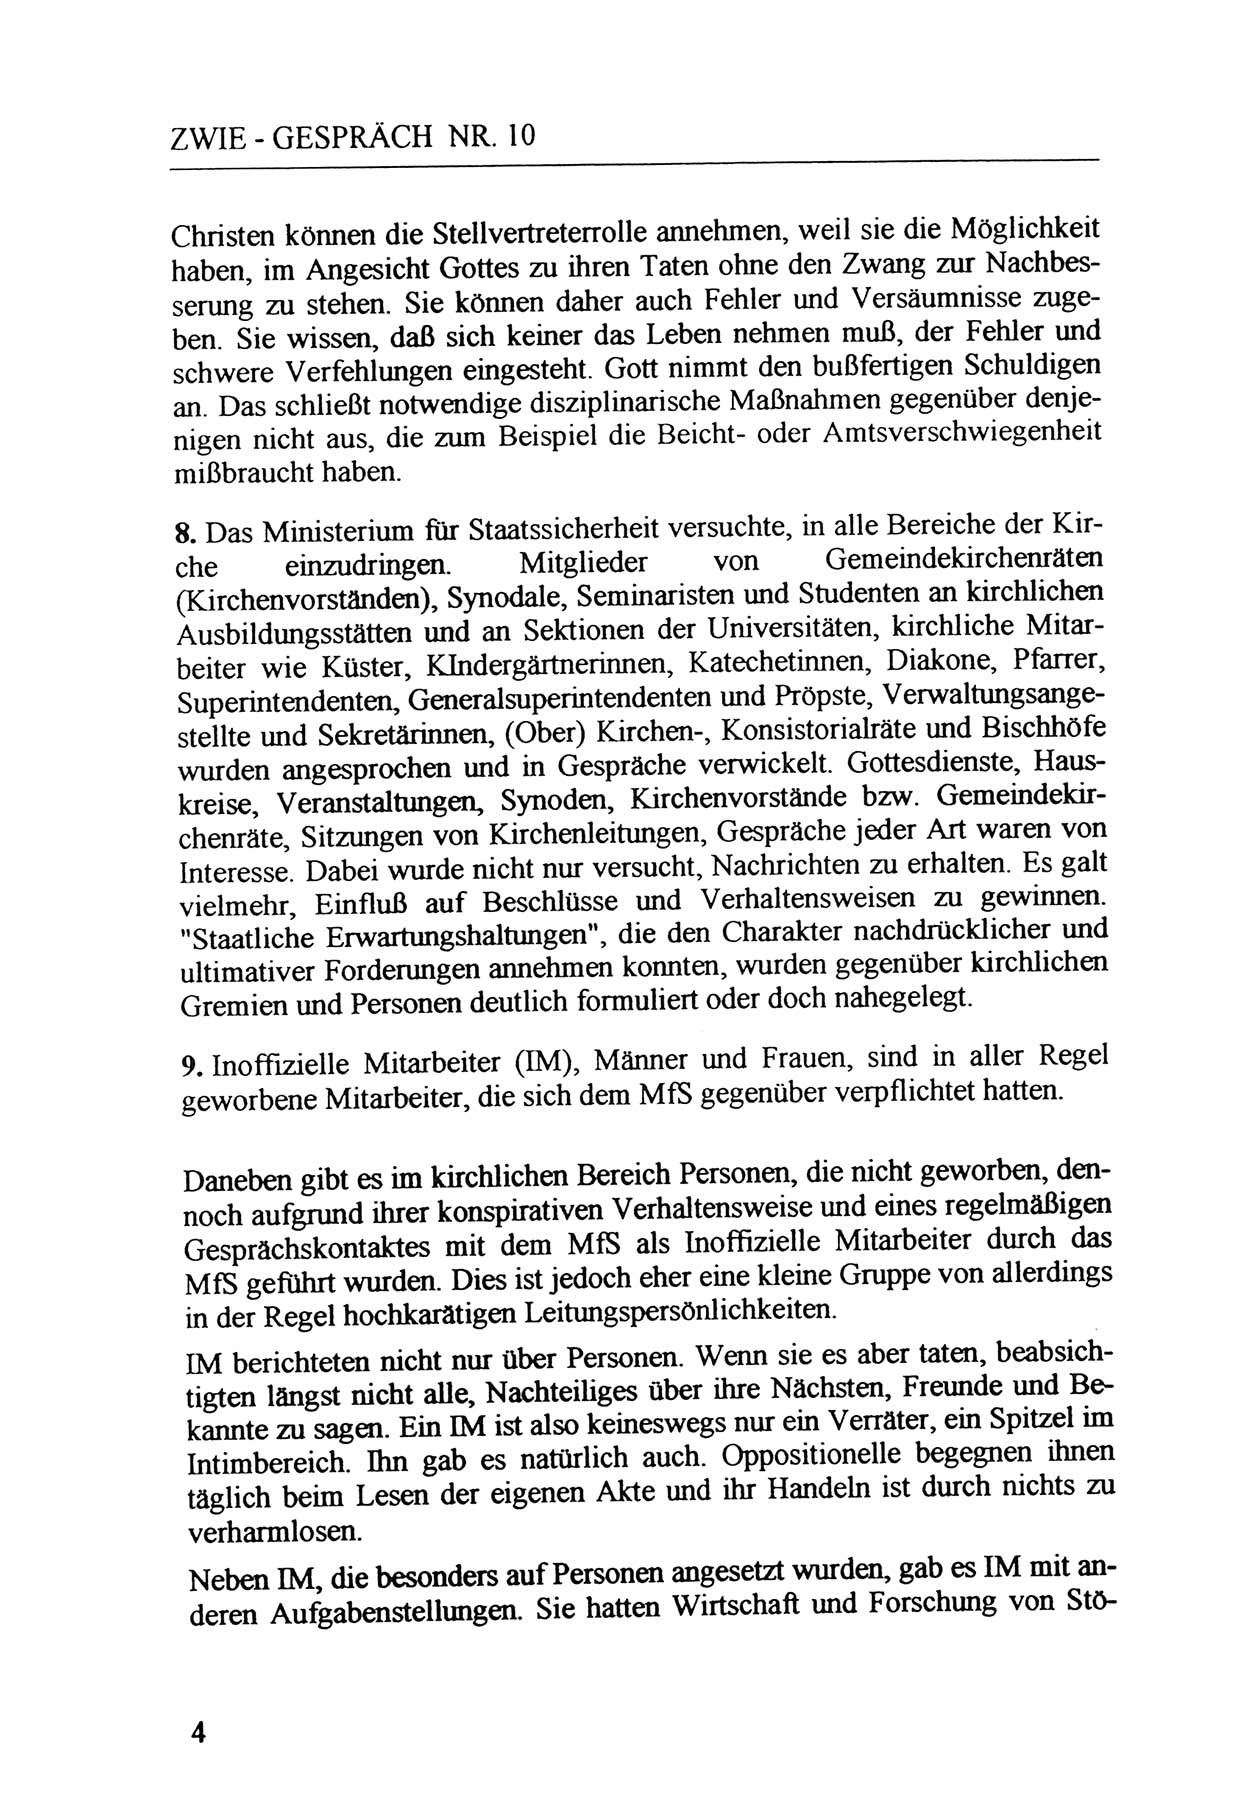 Zwie-Gespräch, Beiträge zur Aufarbeitung der Staatssicherheits-Vergangenheit [Deutsche Demokratische Republik (DDR)], Ausgabe Nr. 10, Berlin 1992, Seite 4 (Zwie-Gespr. Ausg. 10 1992, S. 4)